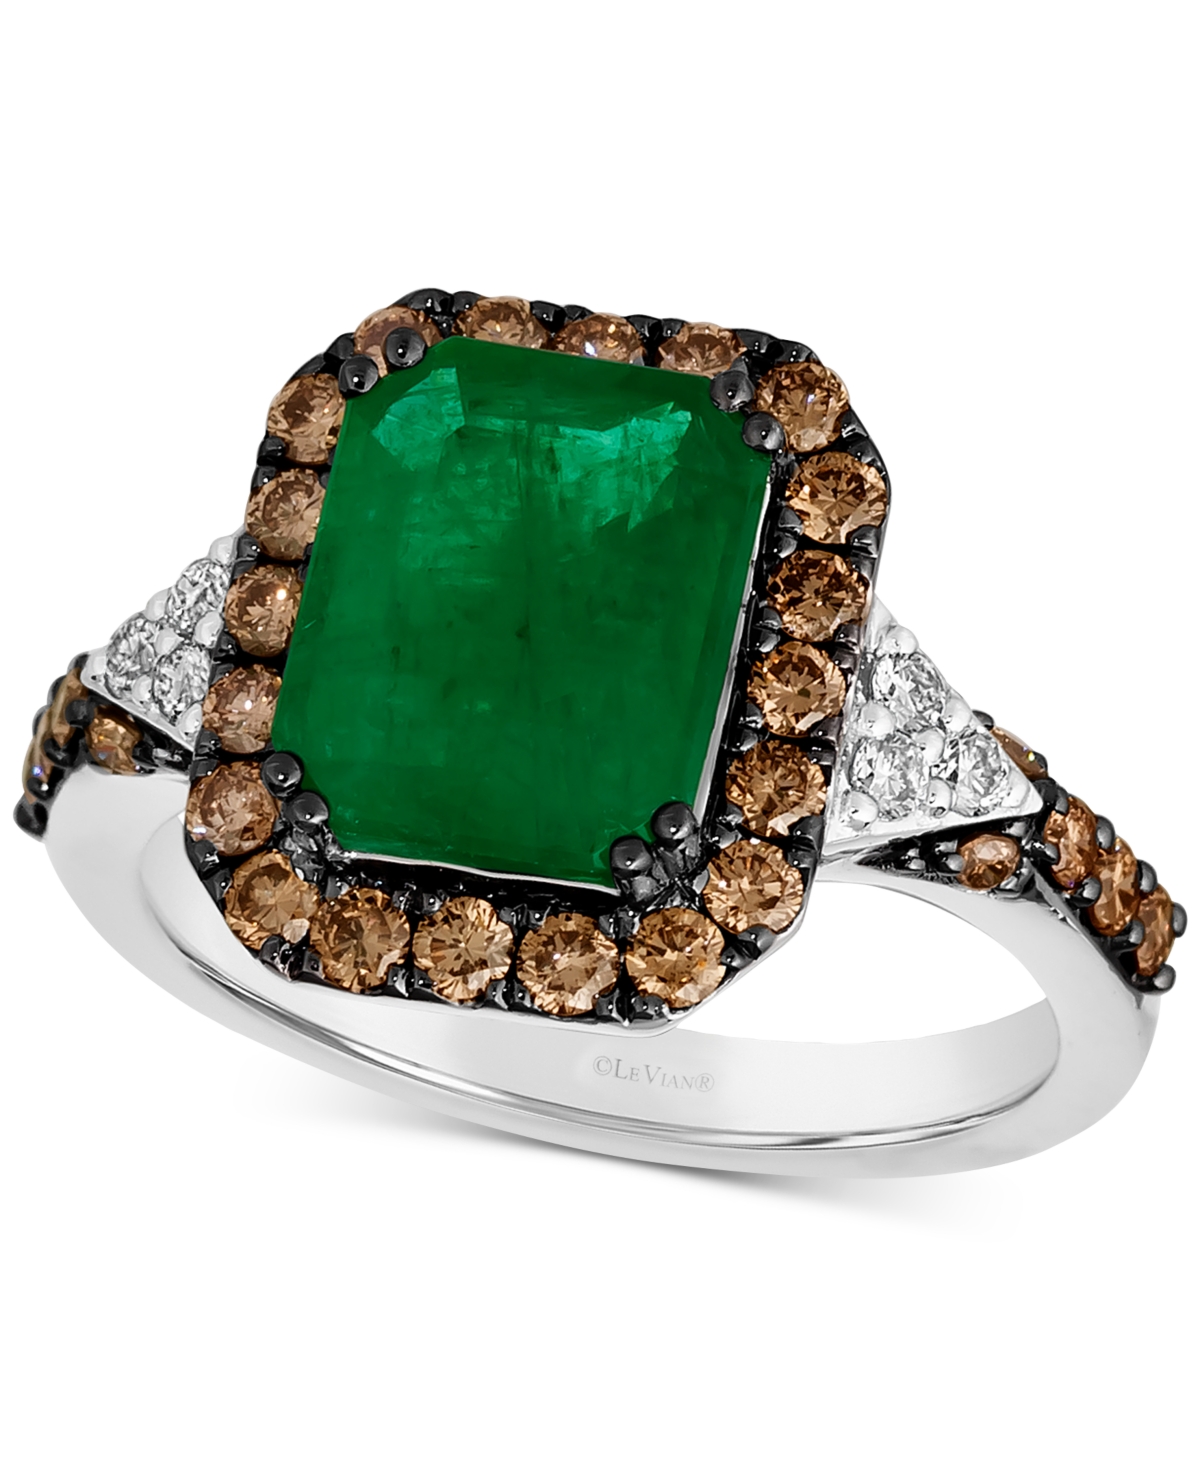 Le Vian Couture Costa Smeralda Emeralds (2-3/8 Ct. T.w.), Chocolate Diamonds (5/8 Ct. T.w.) & Nude Diamonds In No Color